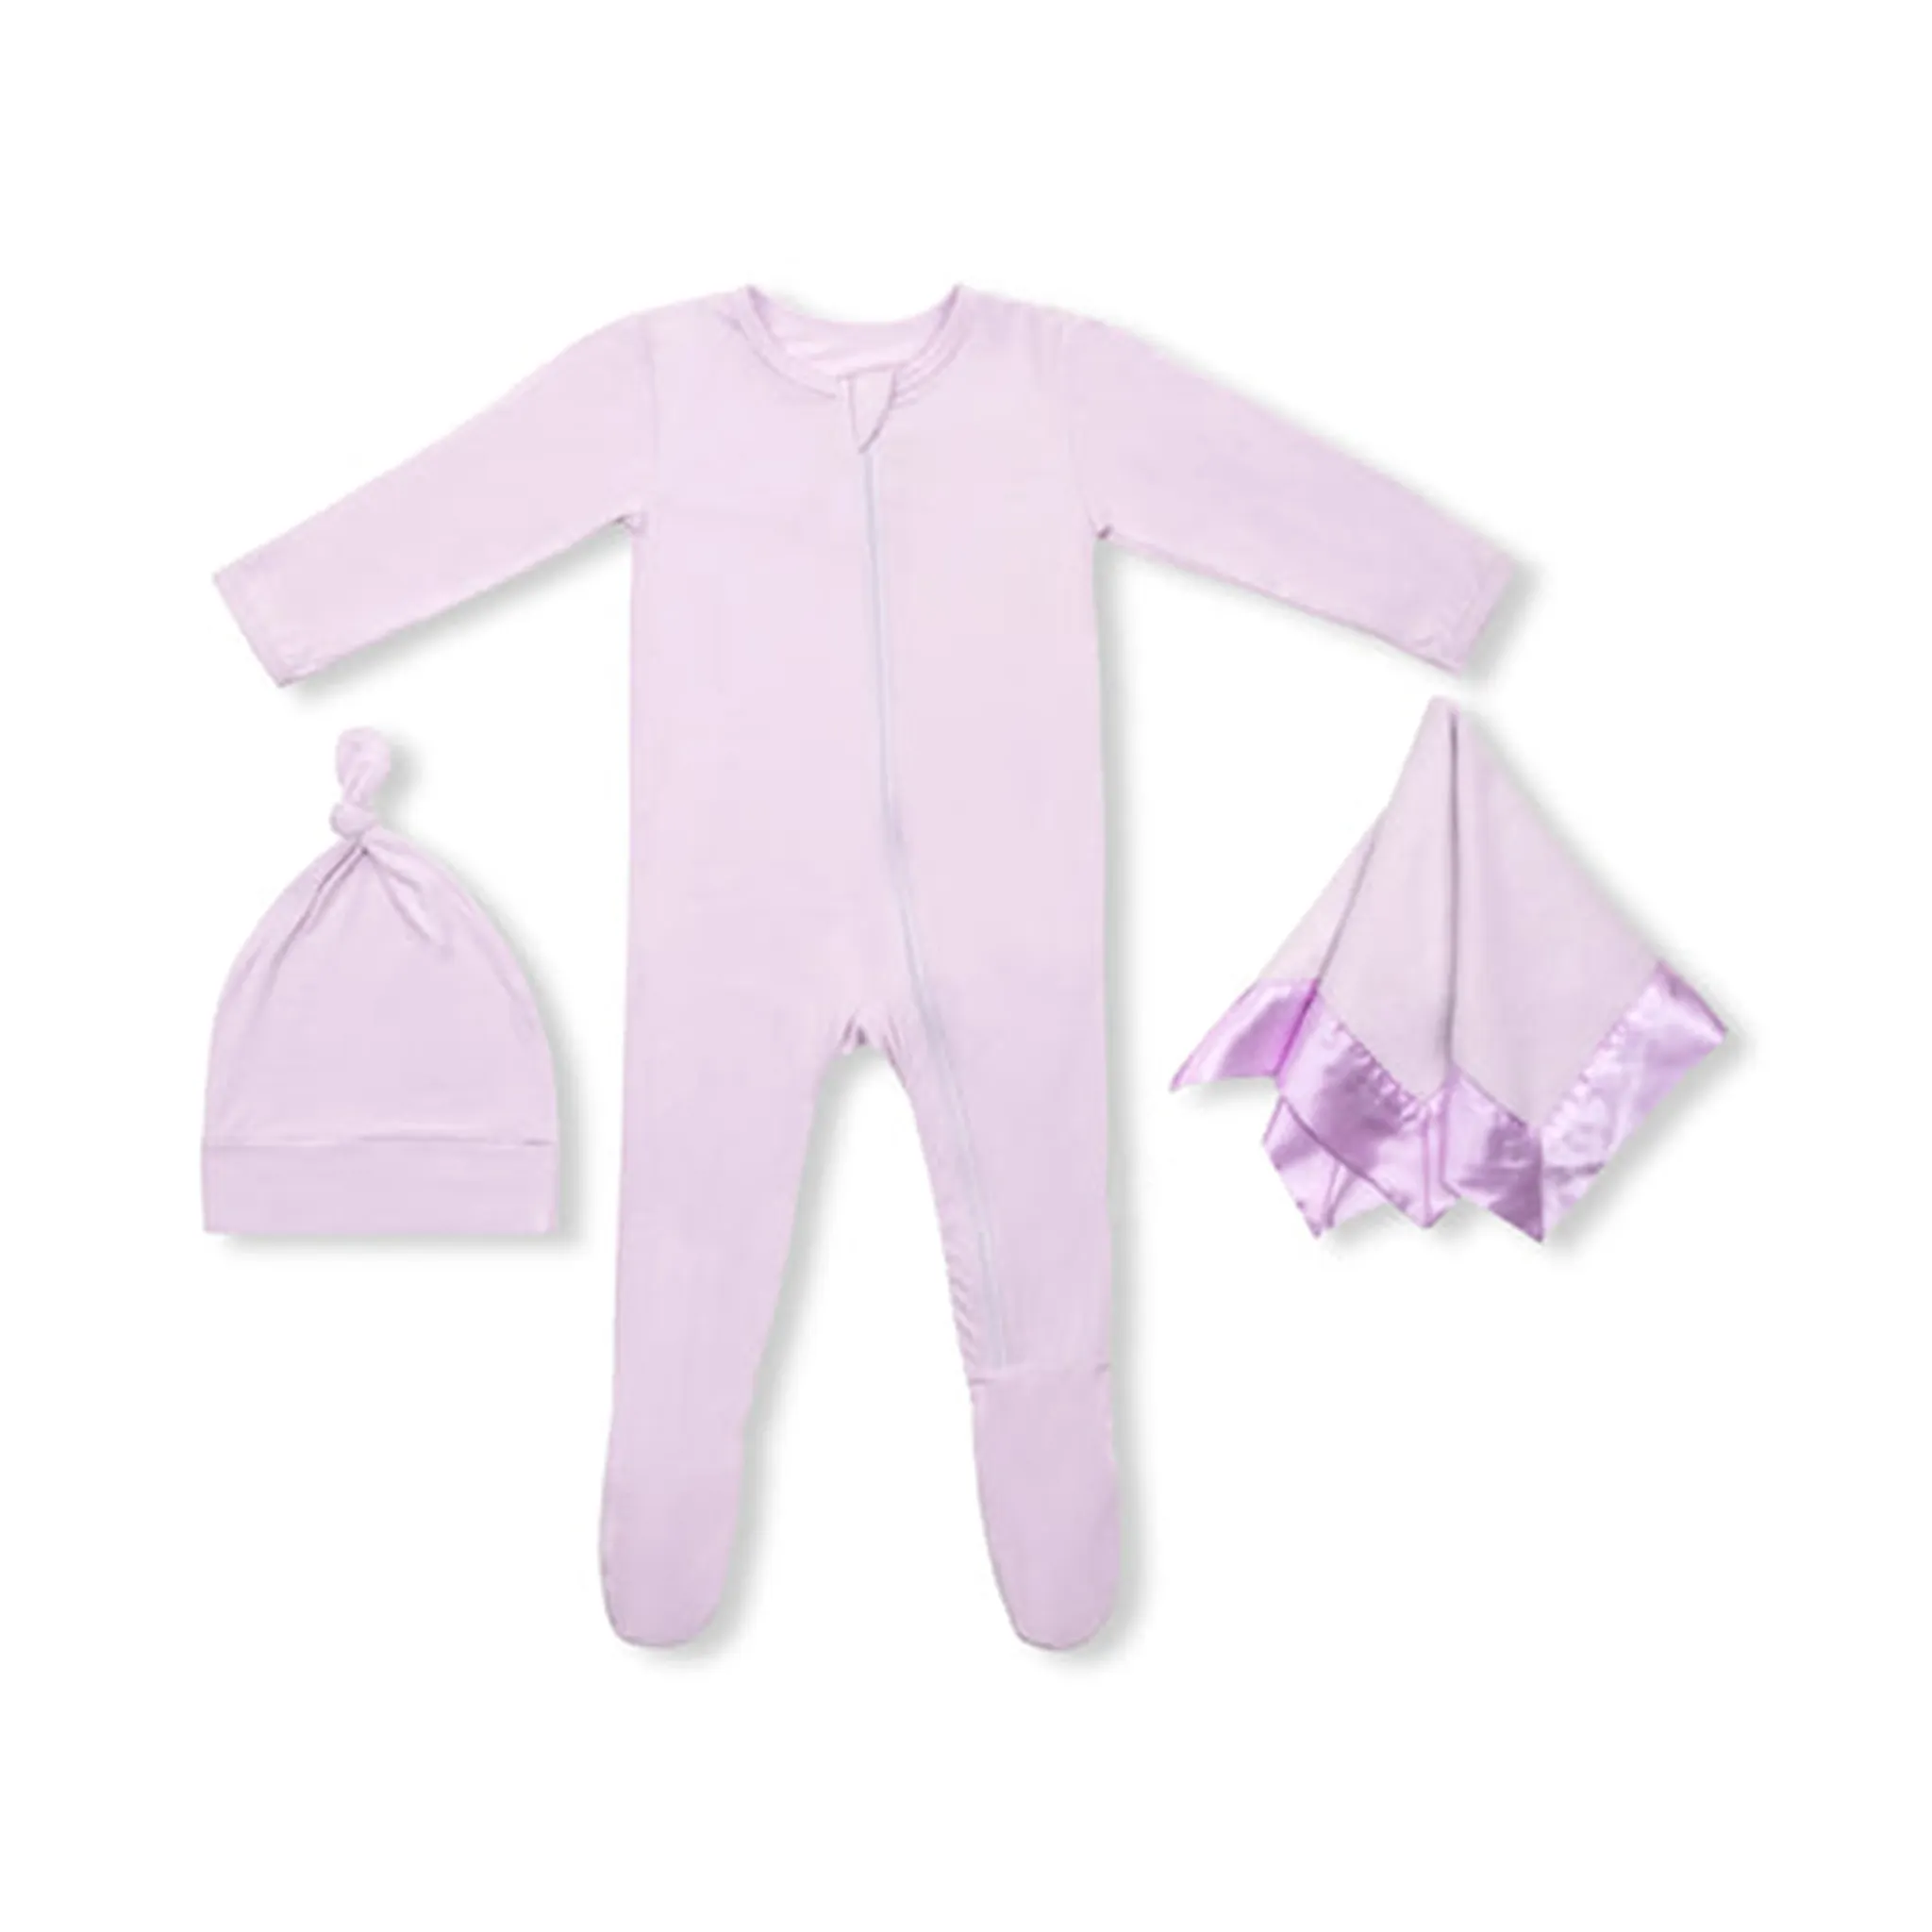 부드러운 대나무 유기농 코튼 아기 잠옷 담요 세트 아기 선물 세트 신생아 아기 세트 도매